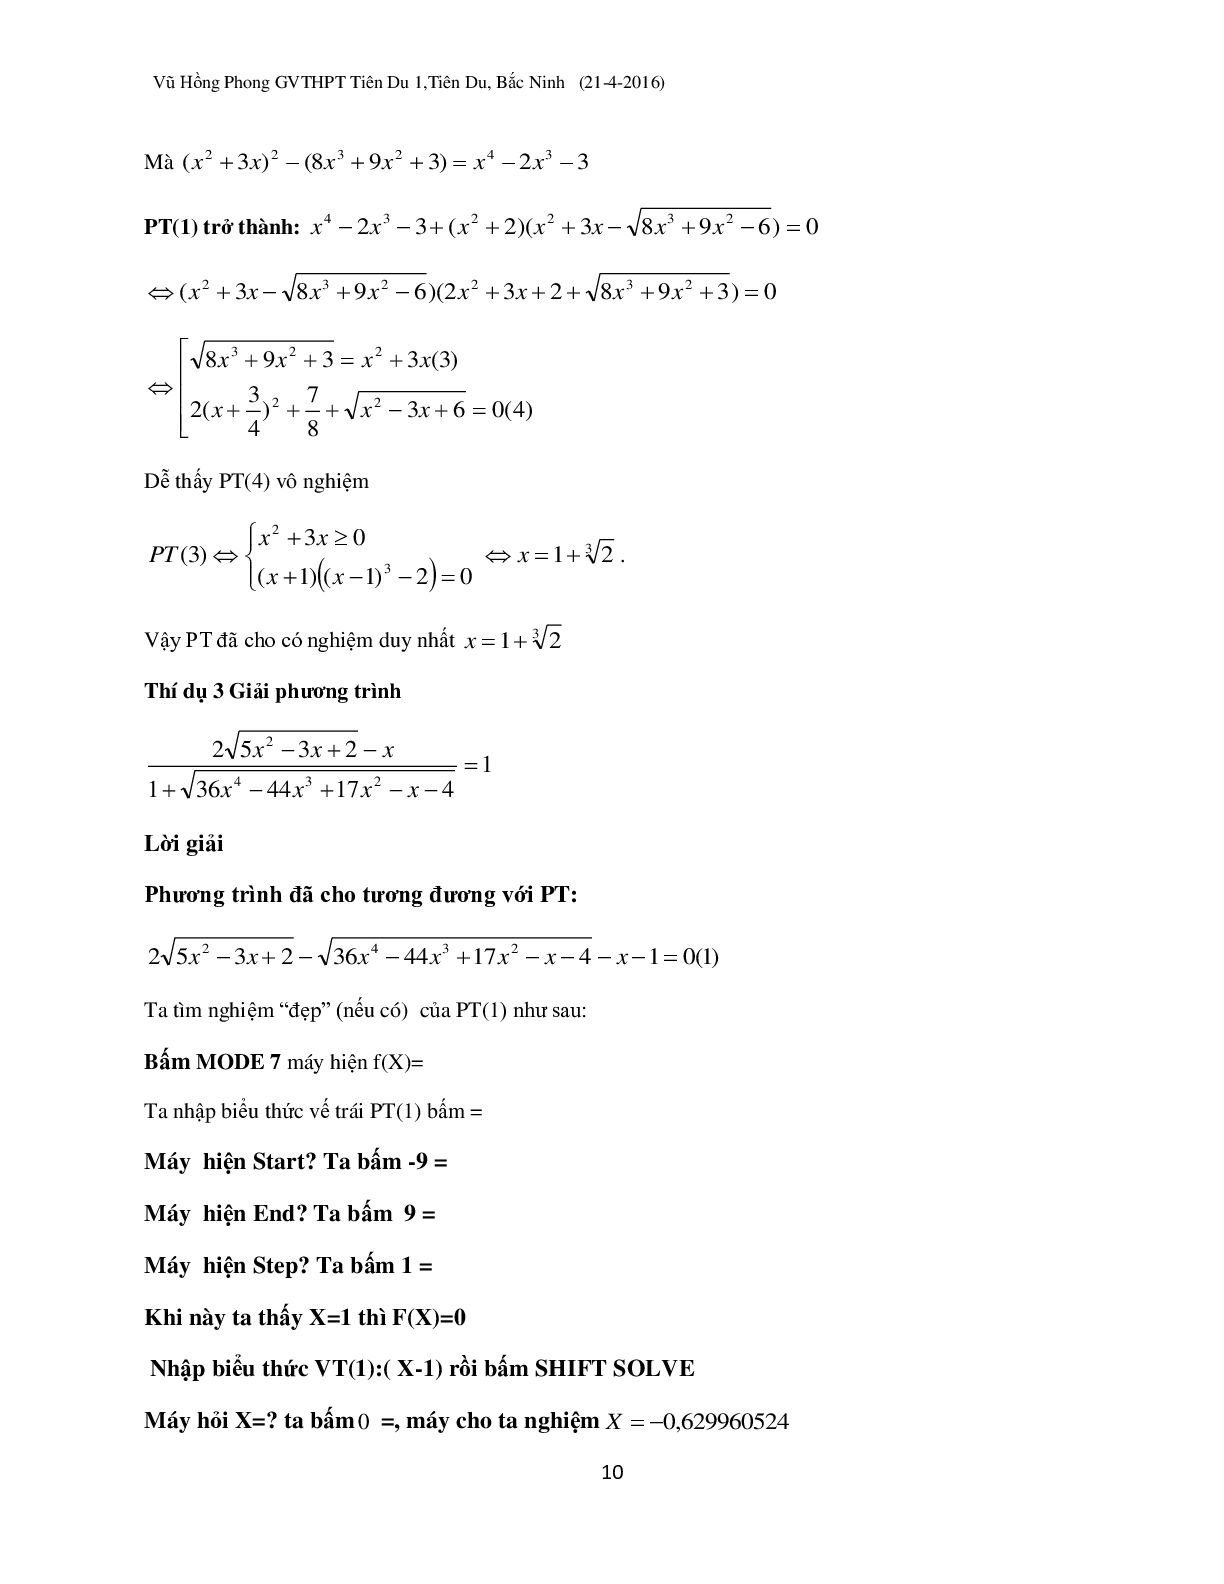 Kỹ thuật ‘đánh cả cụm’ khi dùng Casio giải phương trình vô tỉ (trang 10)